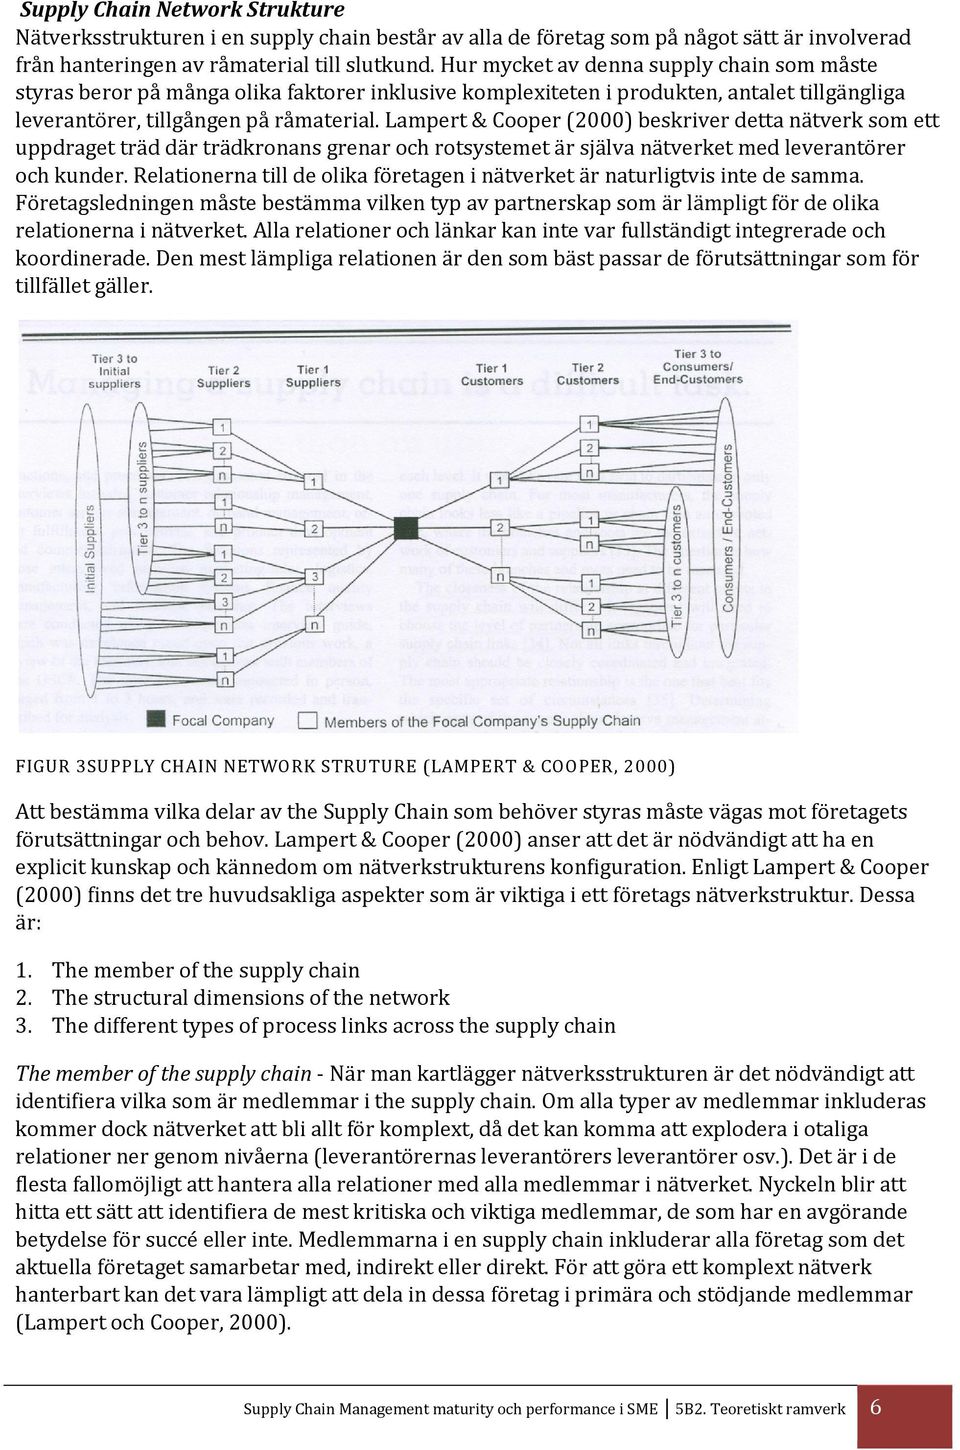 Lampert & Cooper (2000) beskriver detta nätverk som ett uppdraget träd där trädkronans grenar och rotsystemet är själva nätverket med leverantörer och kunder.